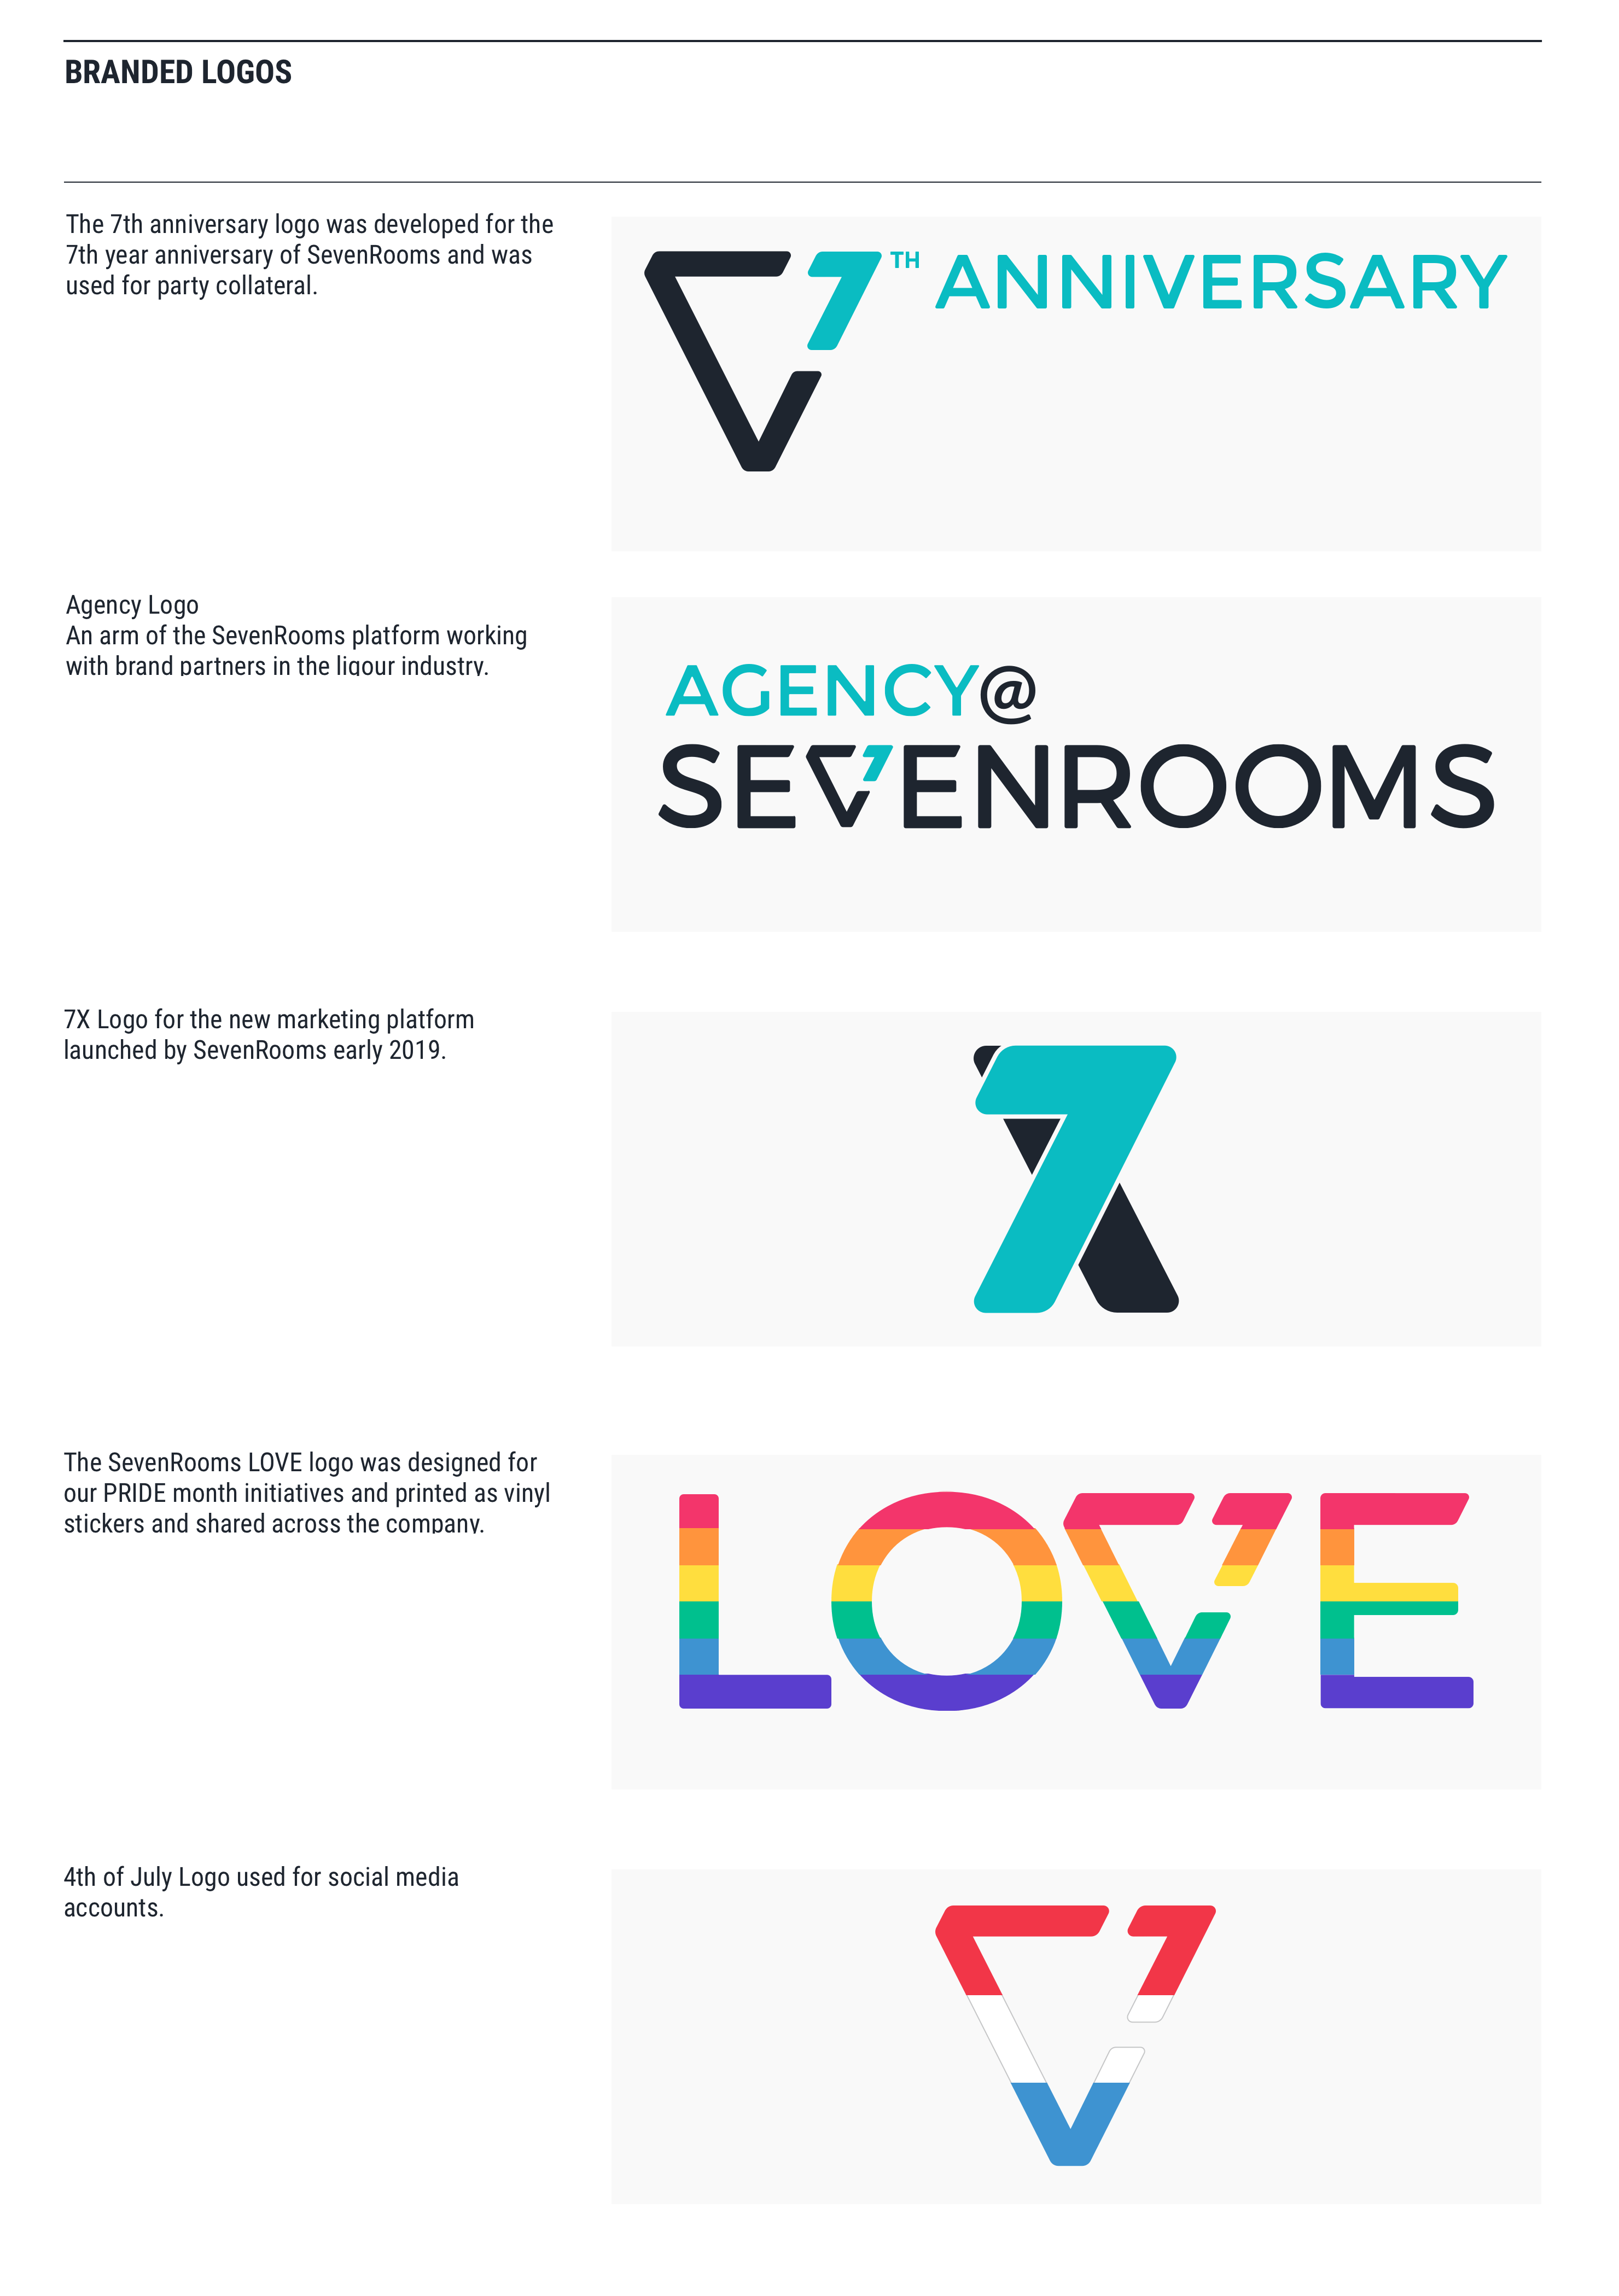 SevenRooms Branded Logos